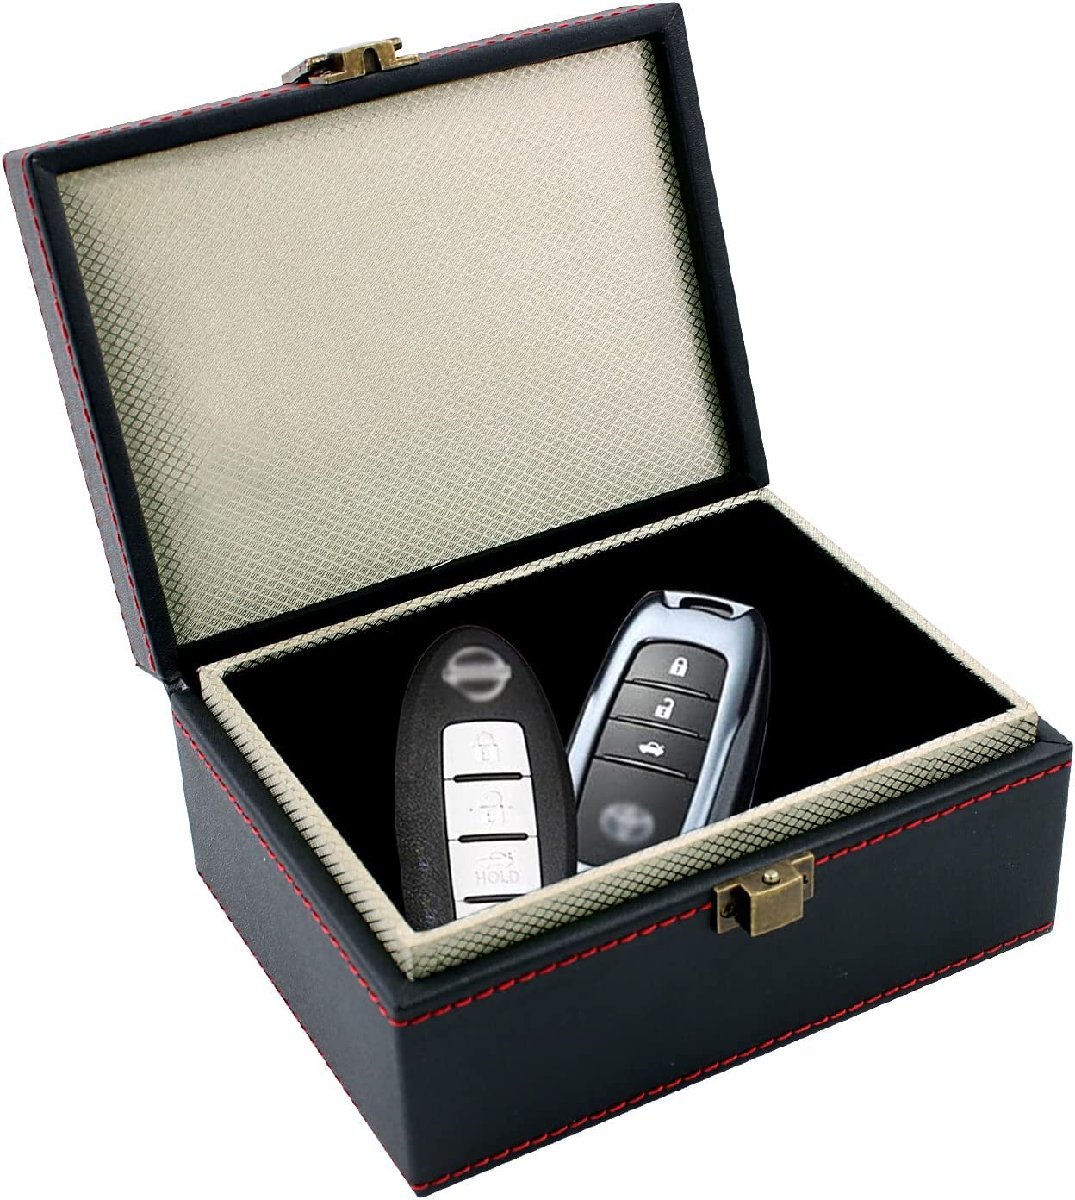 リレーアタック 防止 ケース スマートキー ボックス 電波遮断 ボックス 箱 防止グッズ カードキー キーケース 缶 キー ポーチ 対策 